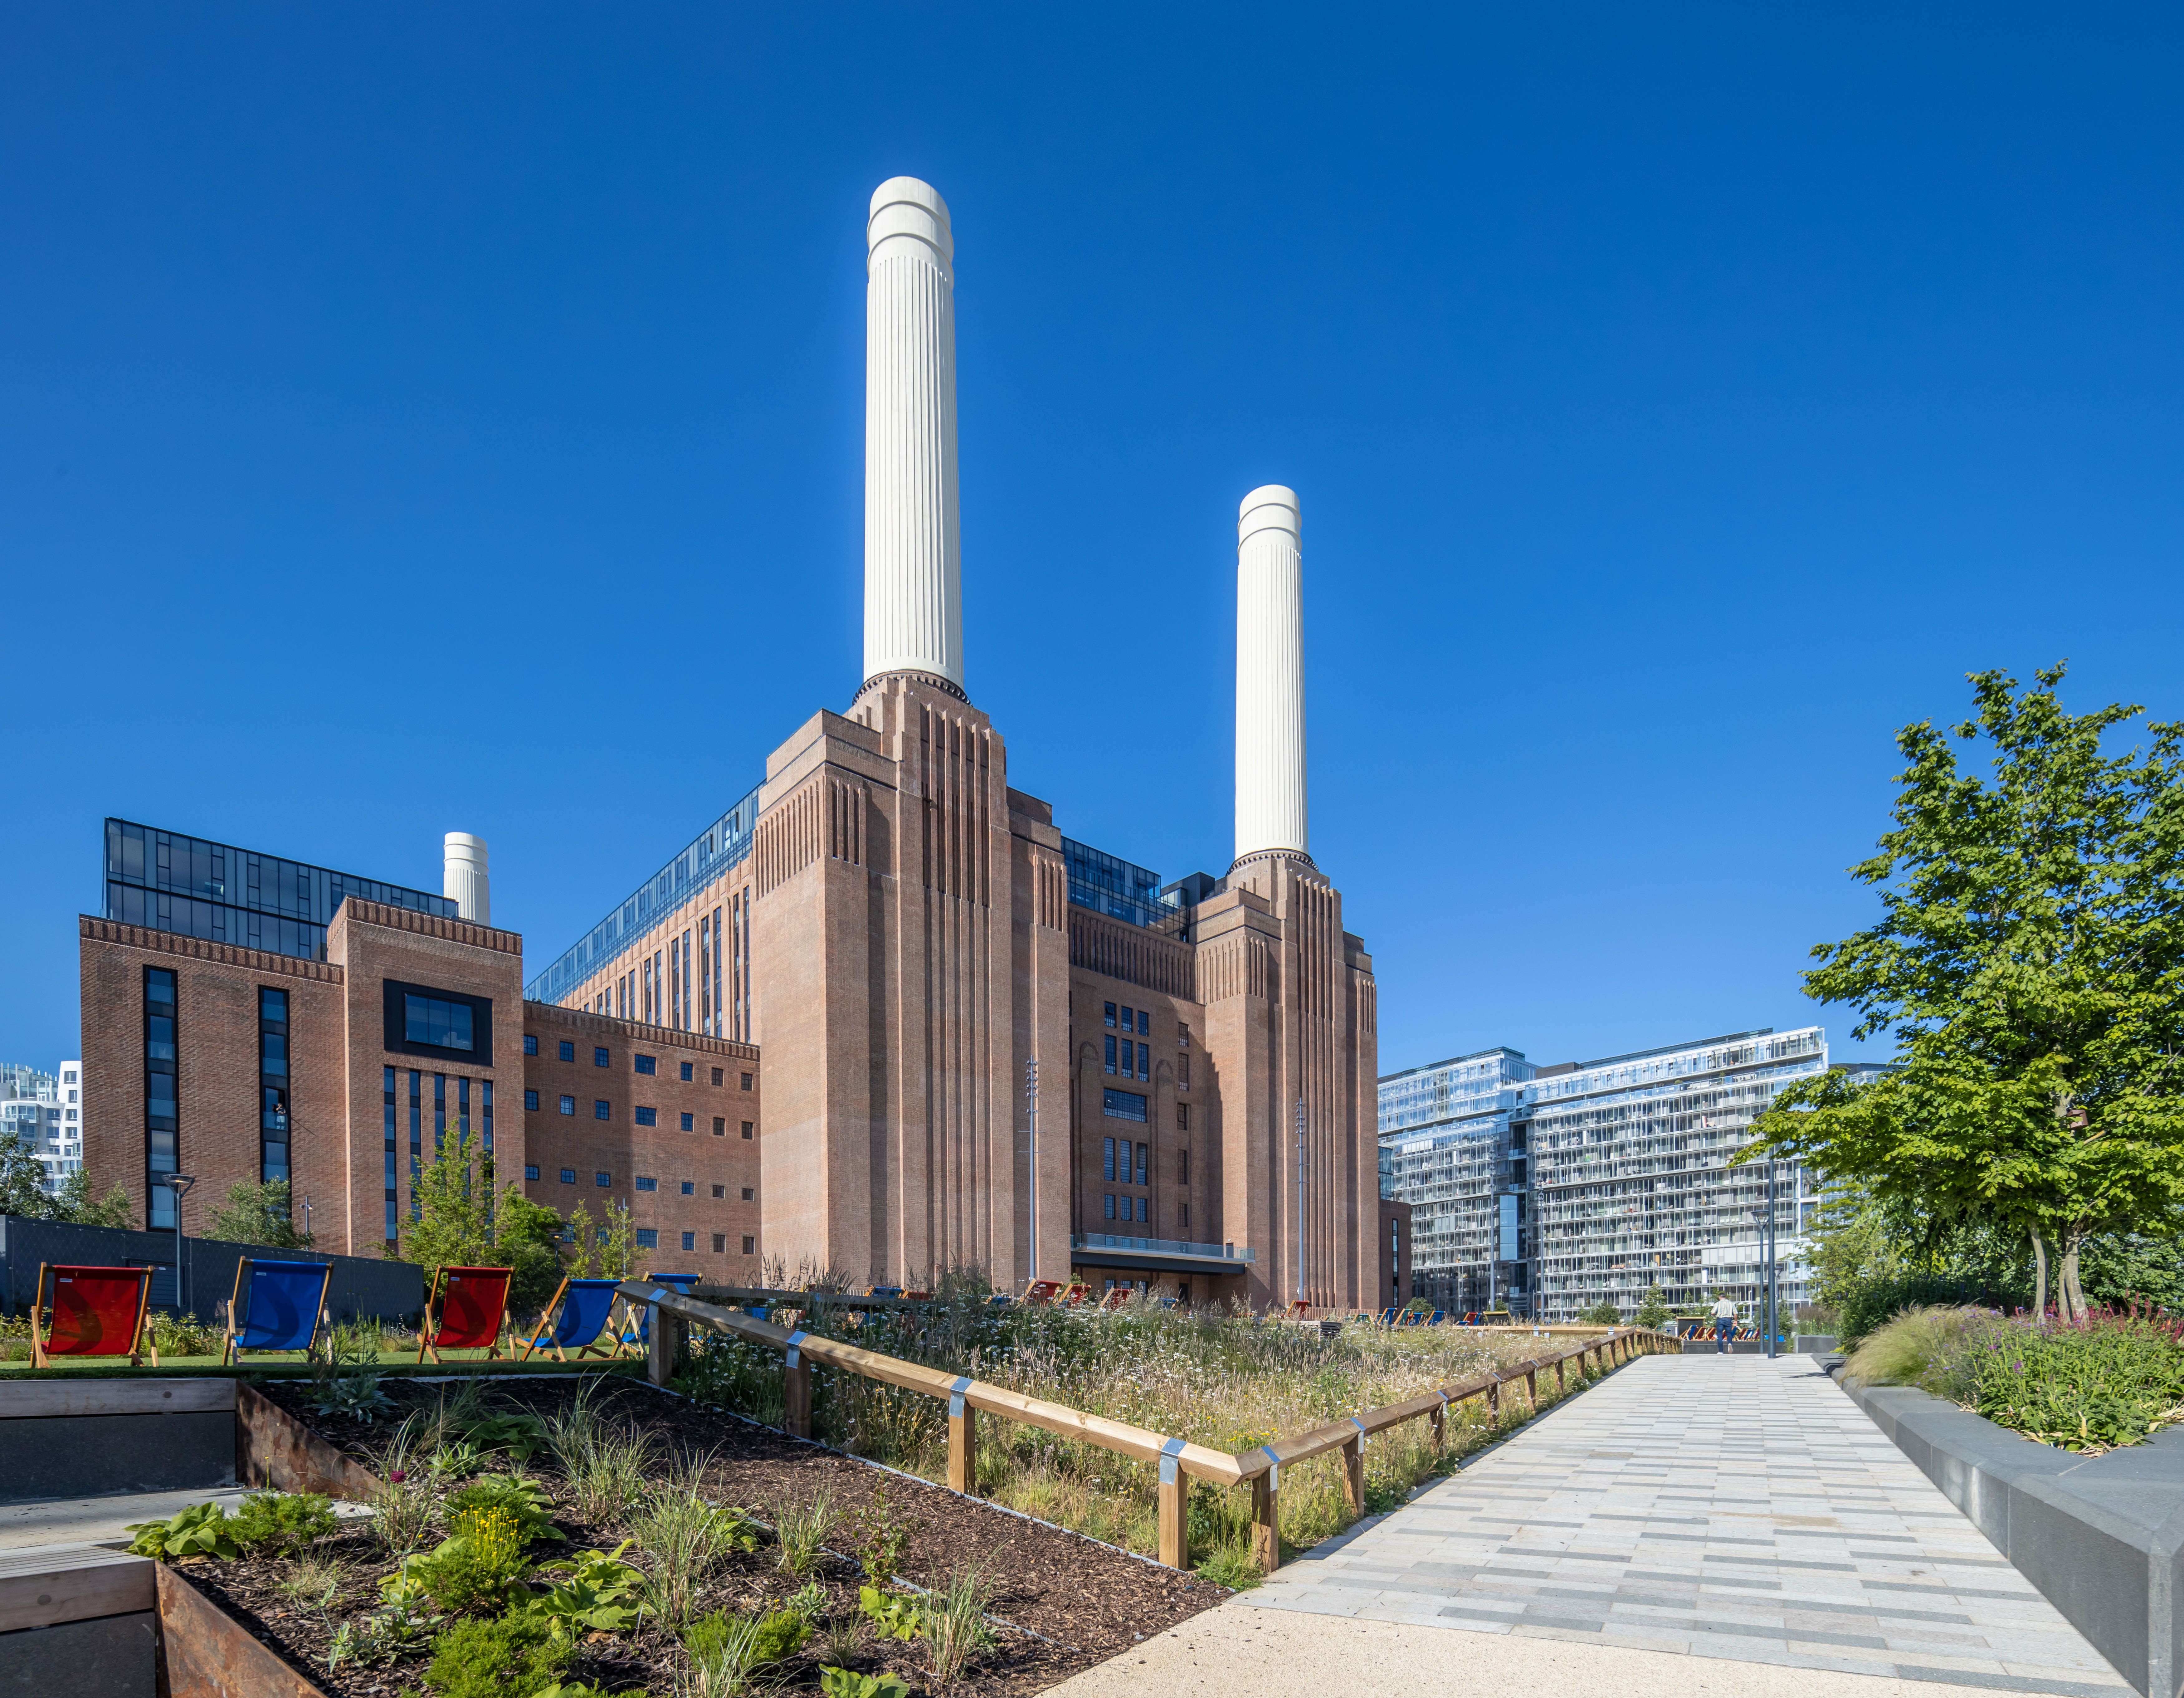 Gallery Battersea Power Station